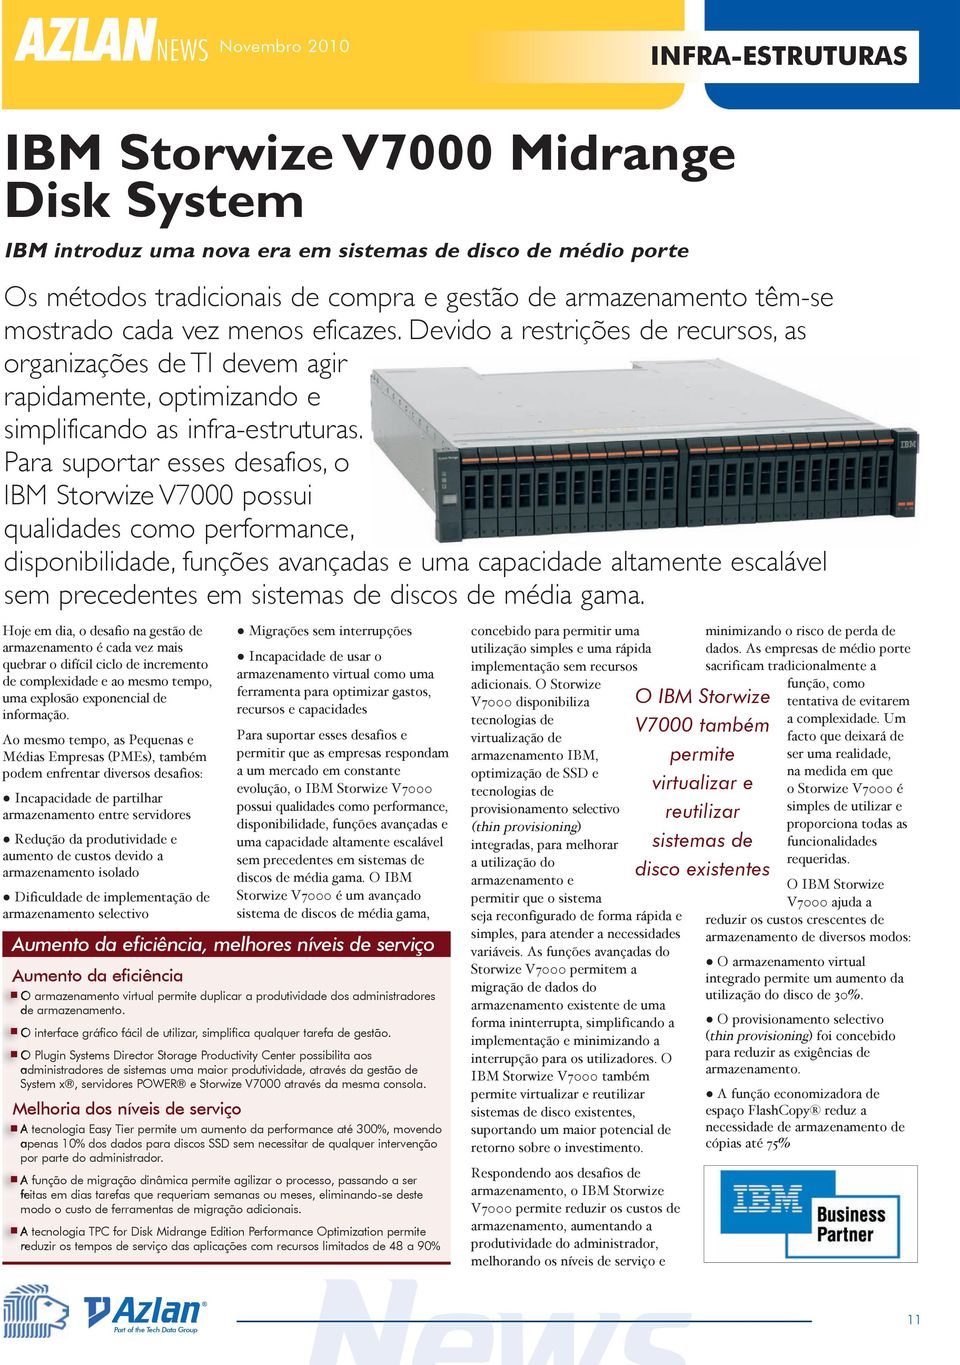 Para suportar esses desafios, o IBM Storwize V7000 possui qualidades como performance, disponibilidade, funções avançadas e uma capacidade altamente escalável sem precedentes em sistemas de discos de